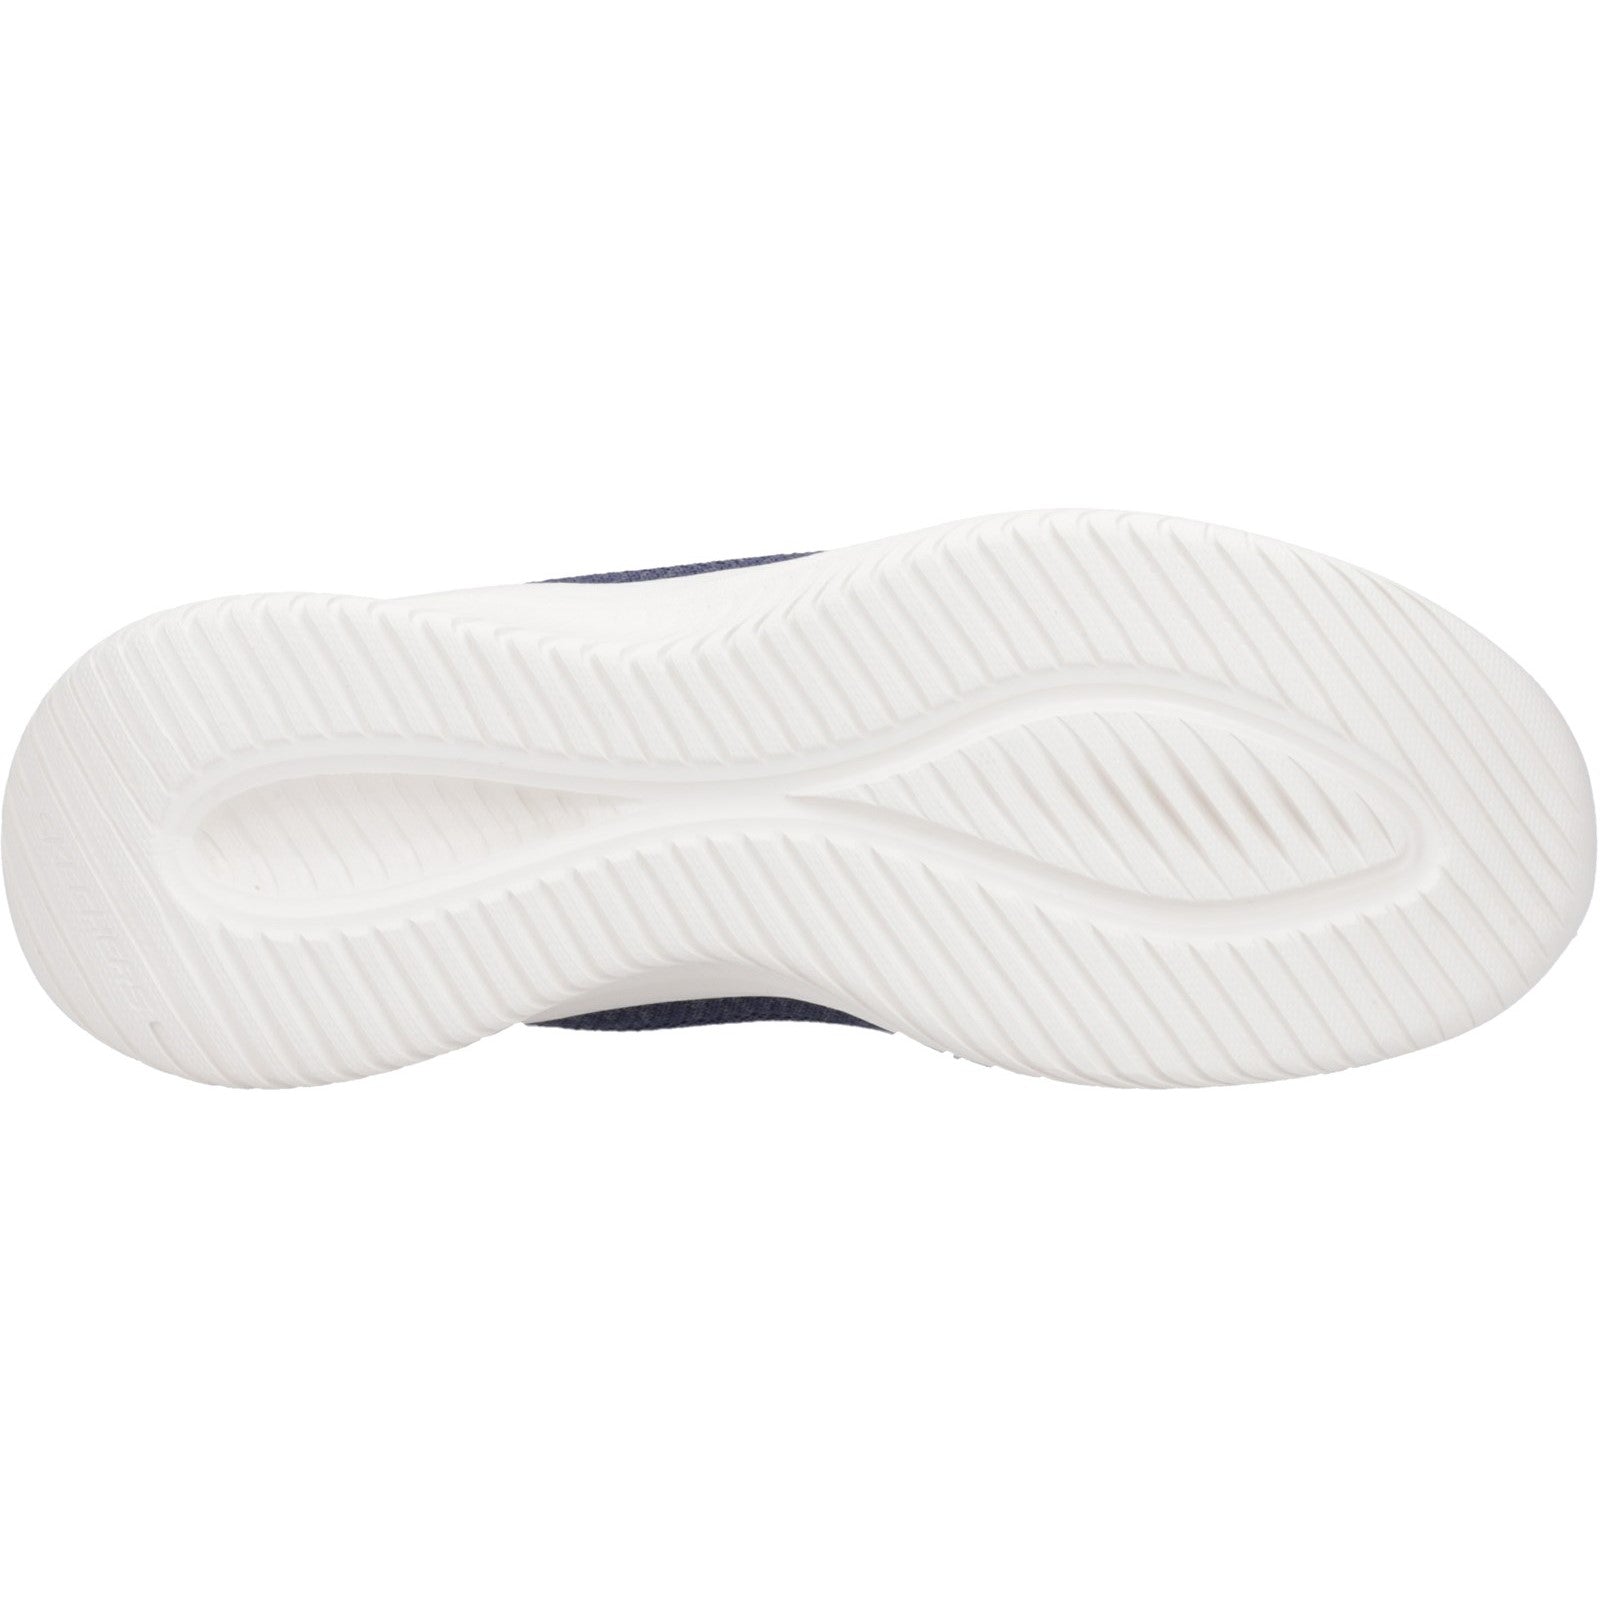 Skechers Ultra Flex 3.0 - New Arc Shoe